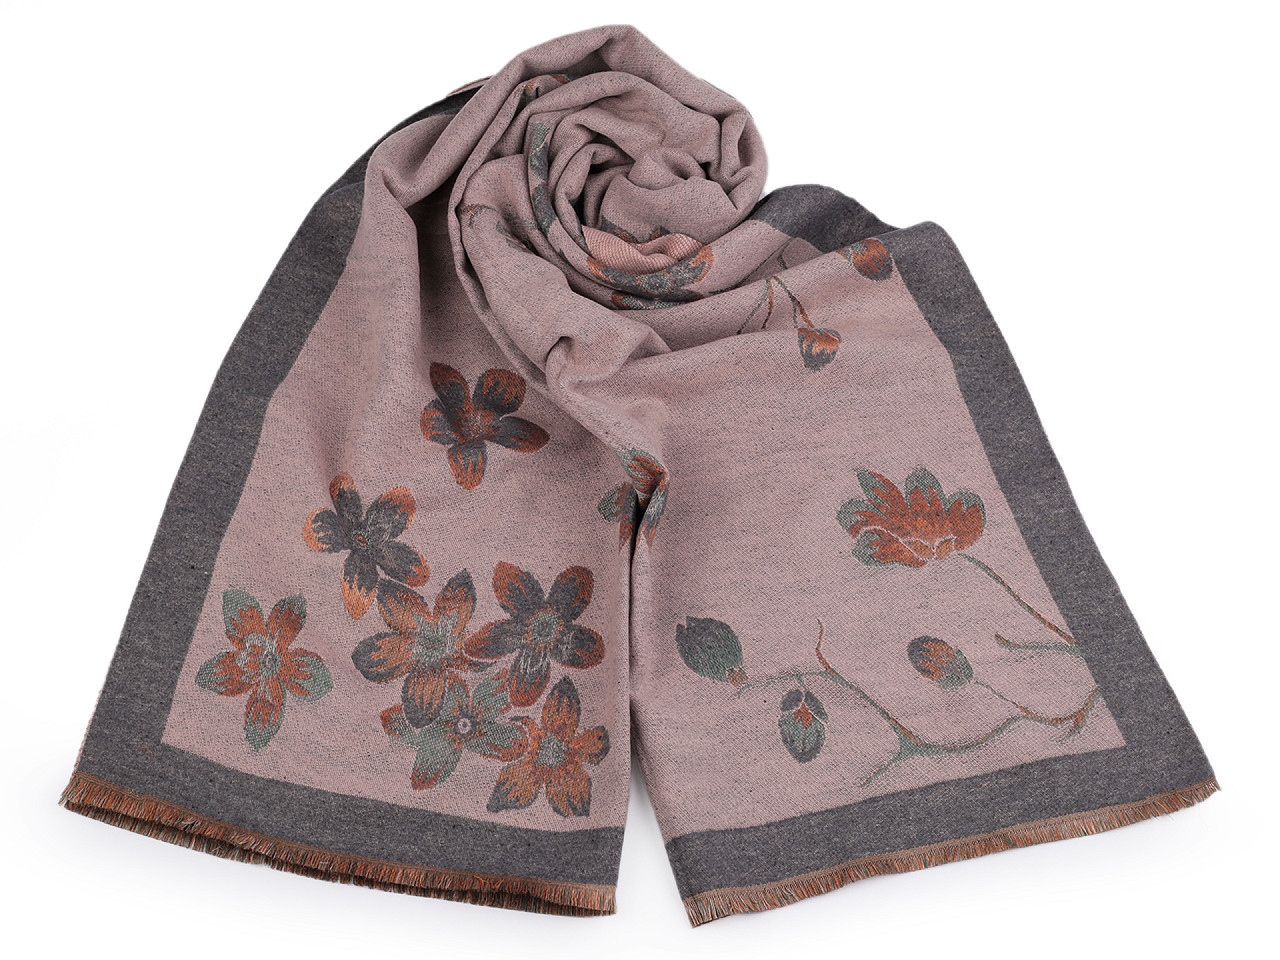 Šátek / šála typu kašmír s třásněmi, květy 65x190 cm, barva 1 pudrová šedá